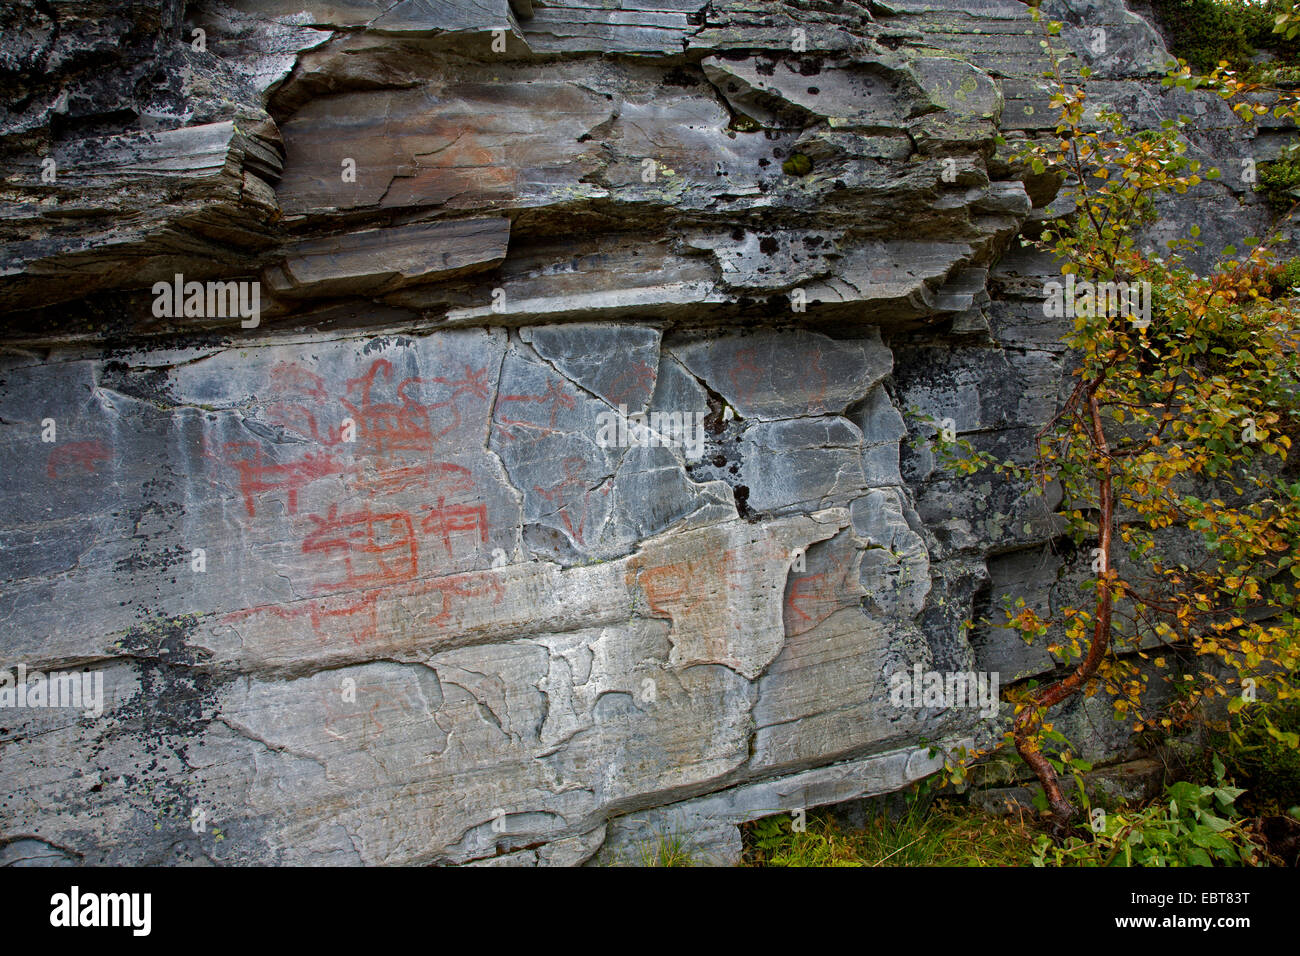 rock paintings in Messlingen, Sweden, Flatruet Stock Photo